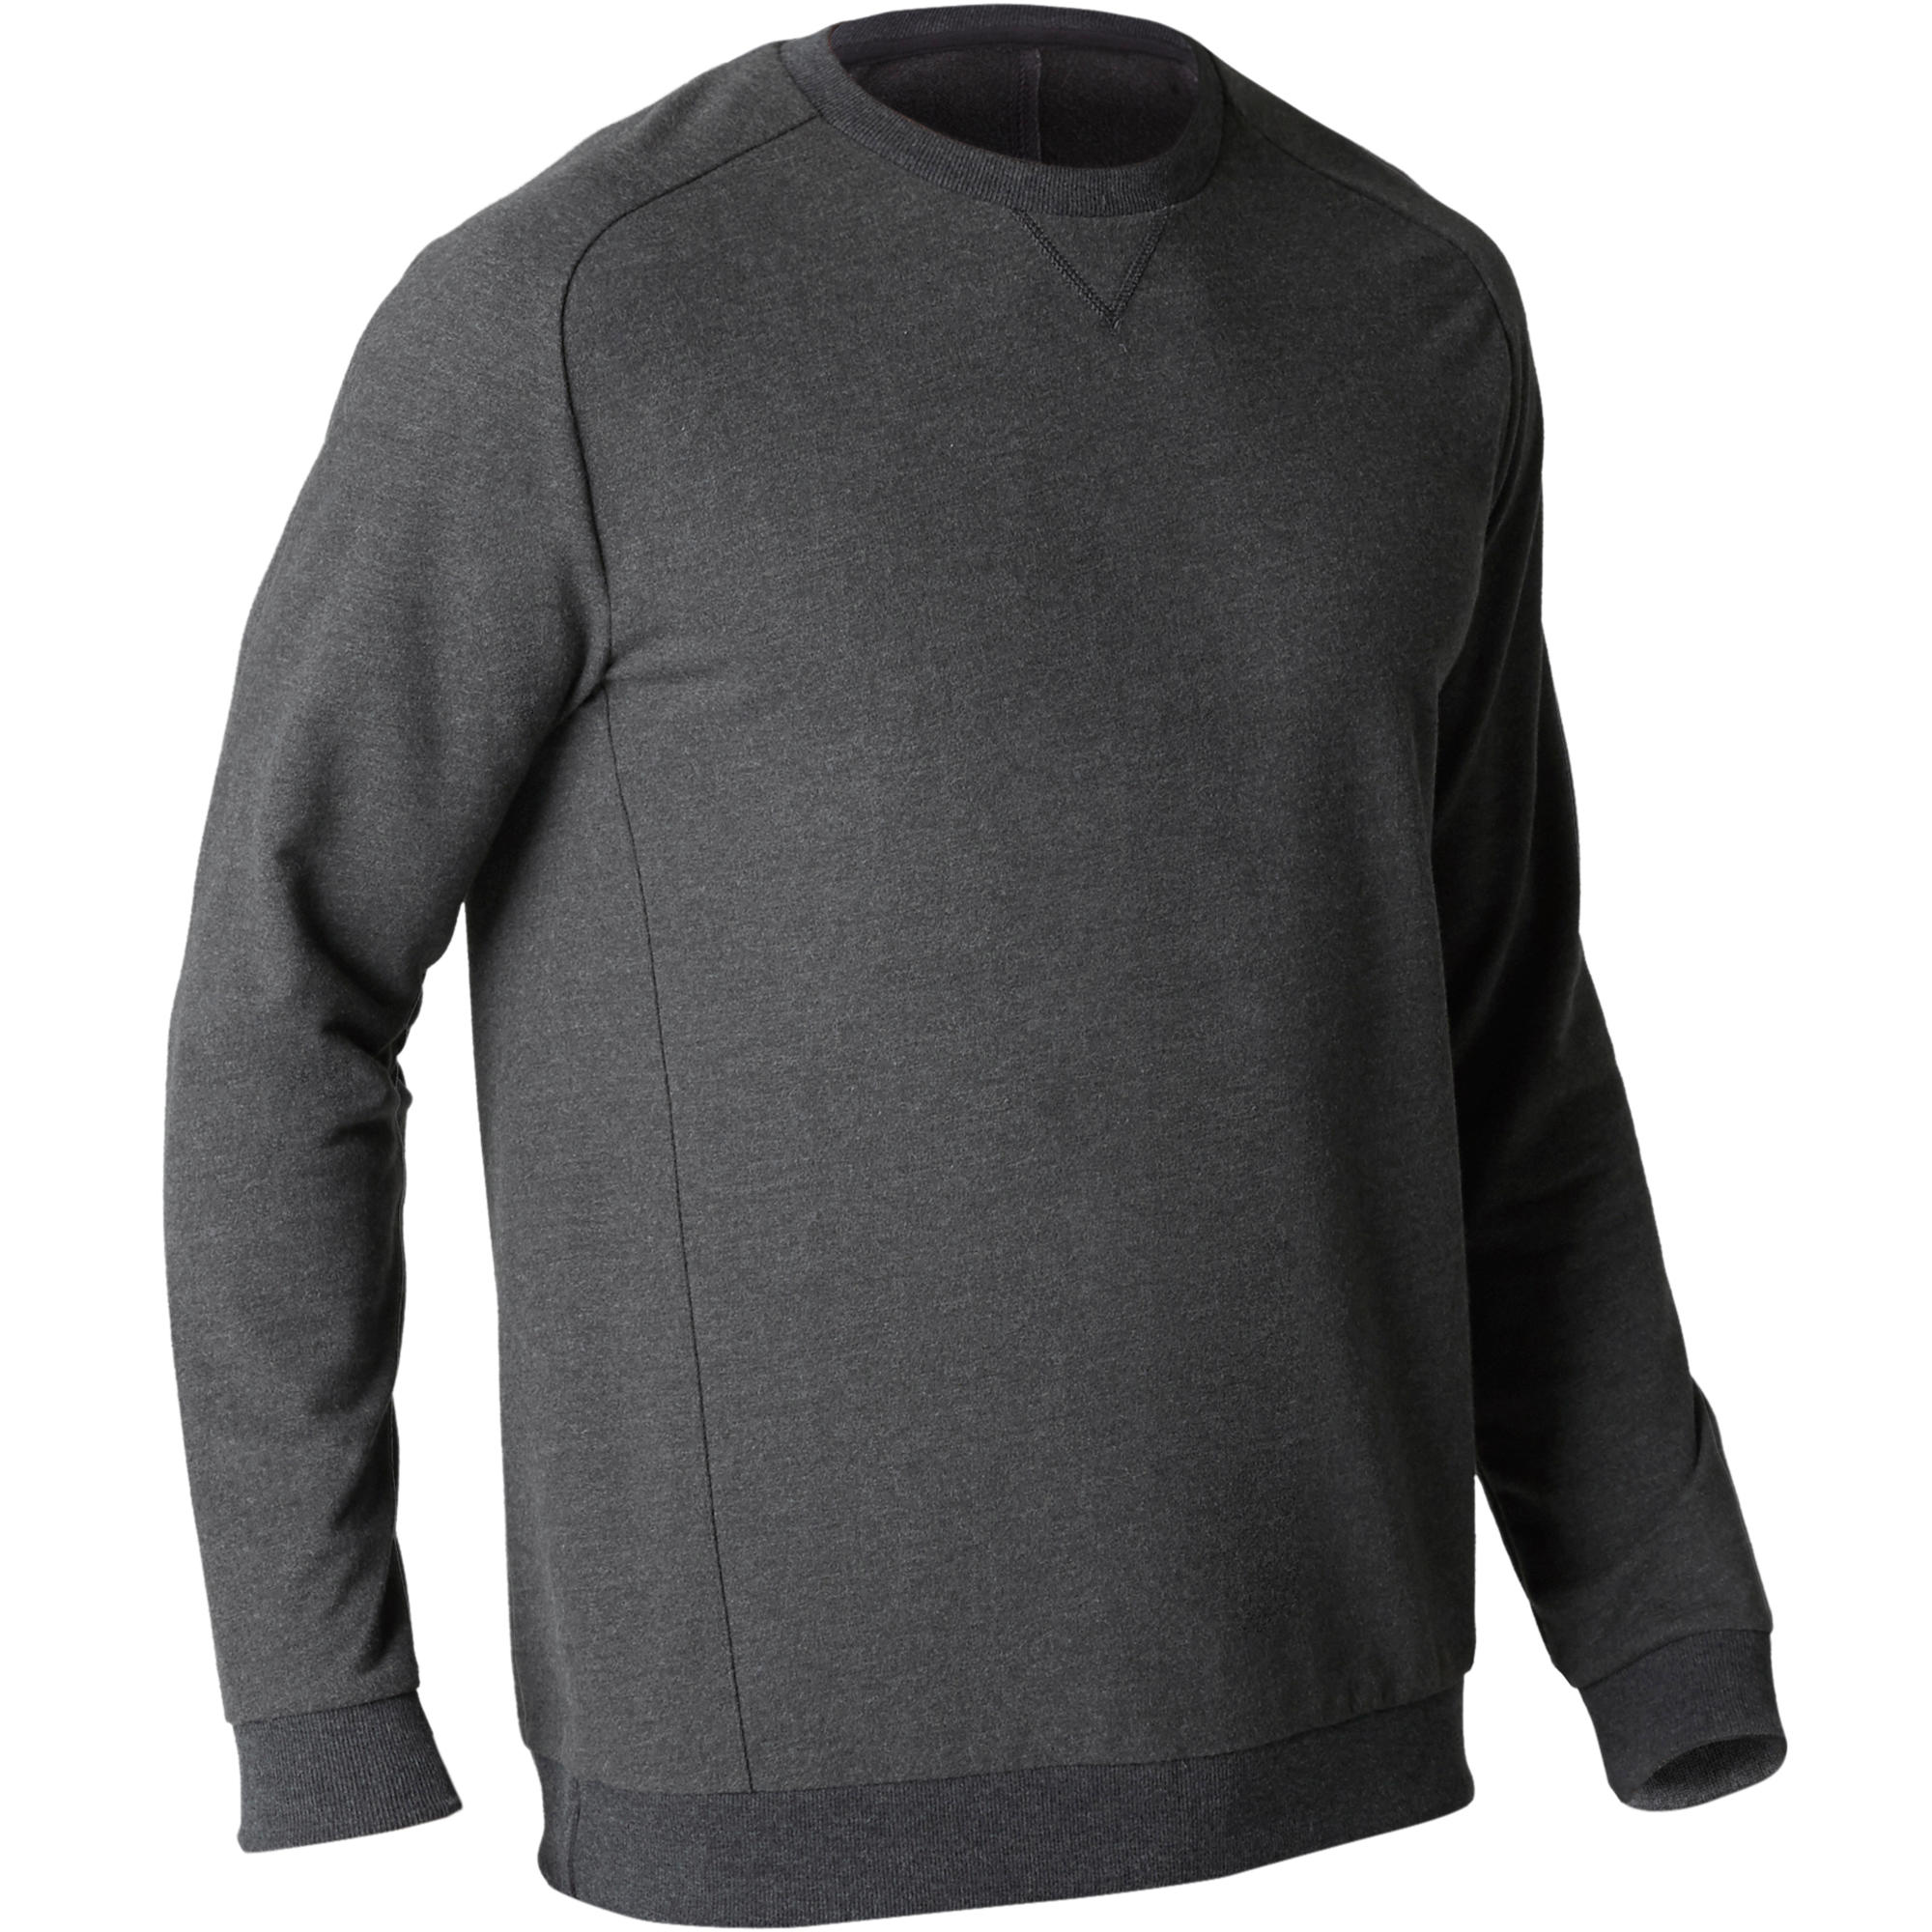 sweatshirt for men under 500